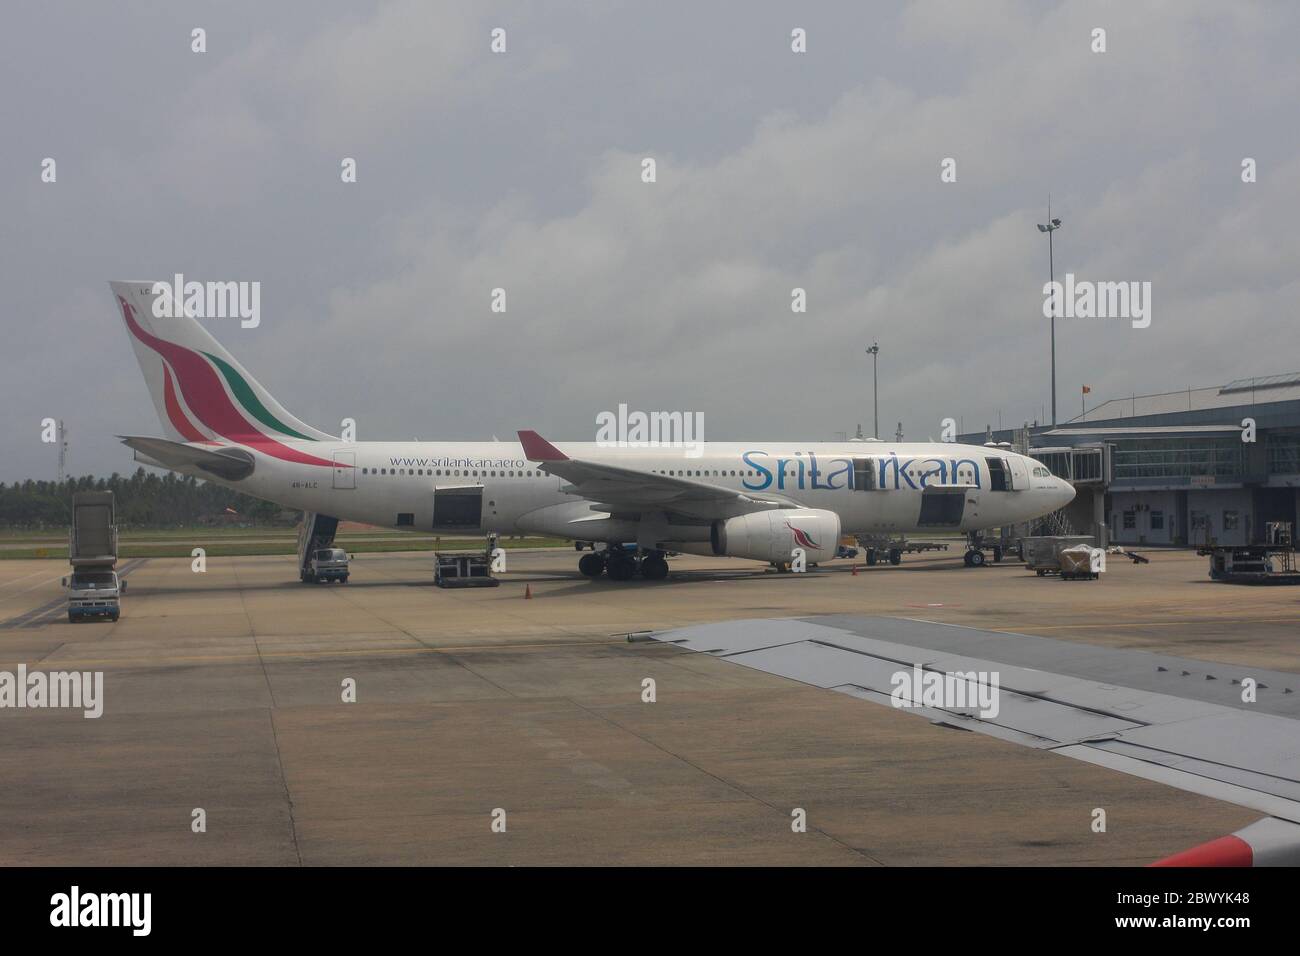 A Sri Lankan Airlines Airbus A330-200 aircraft at Bandaranaike International Airport. Sri Lanka Stock Photo